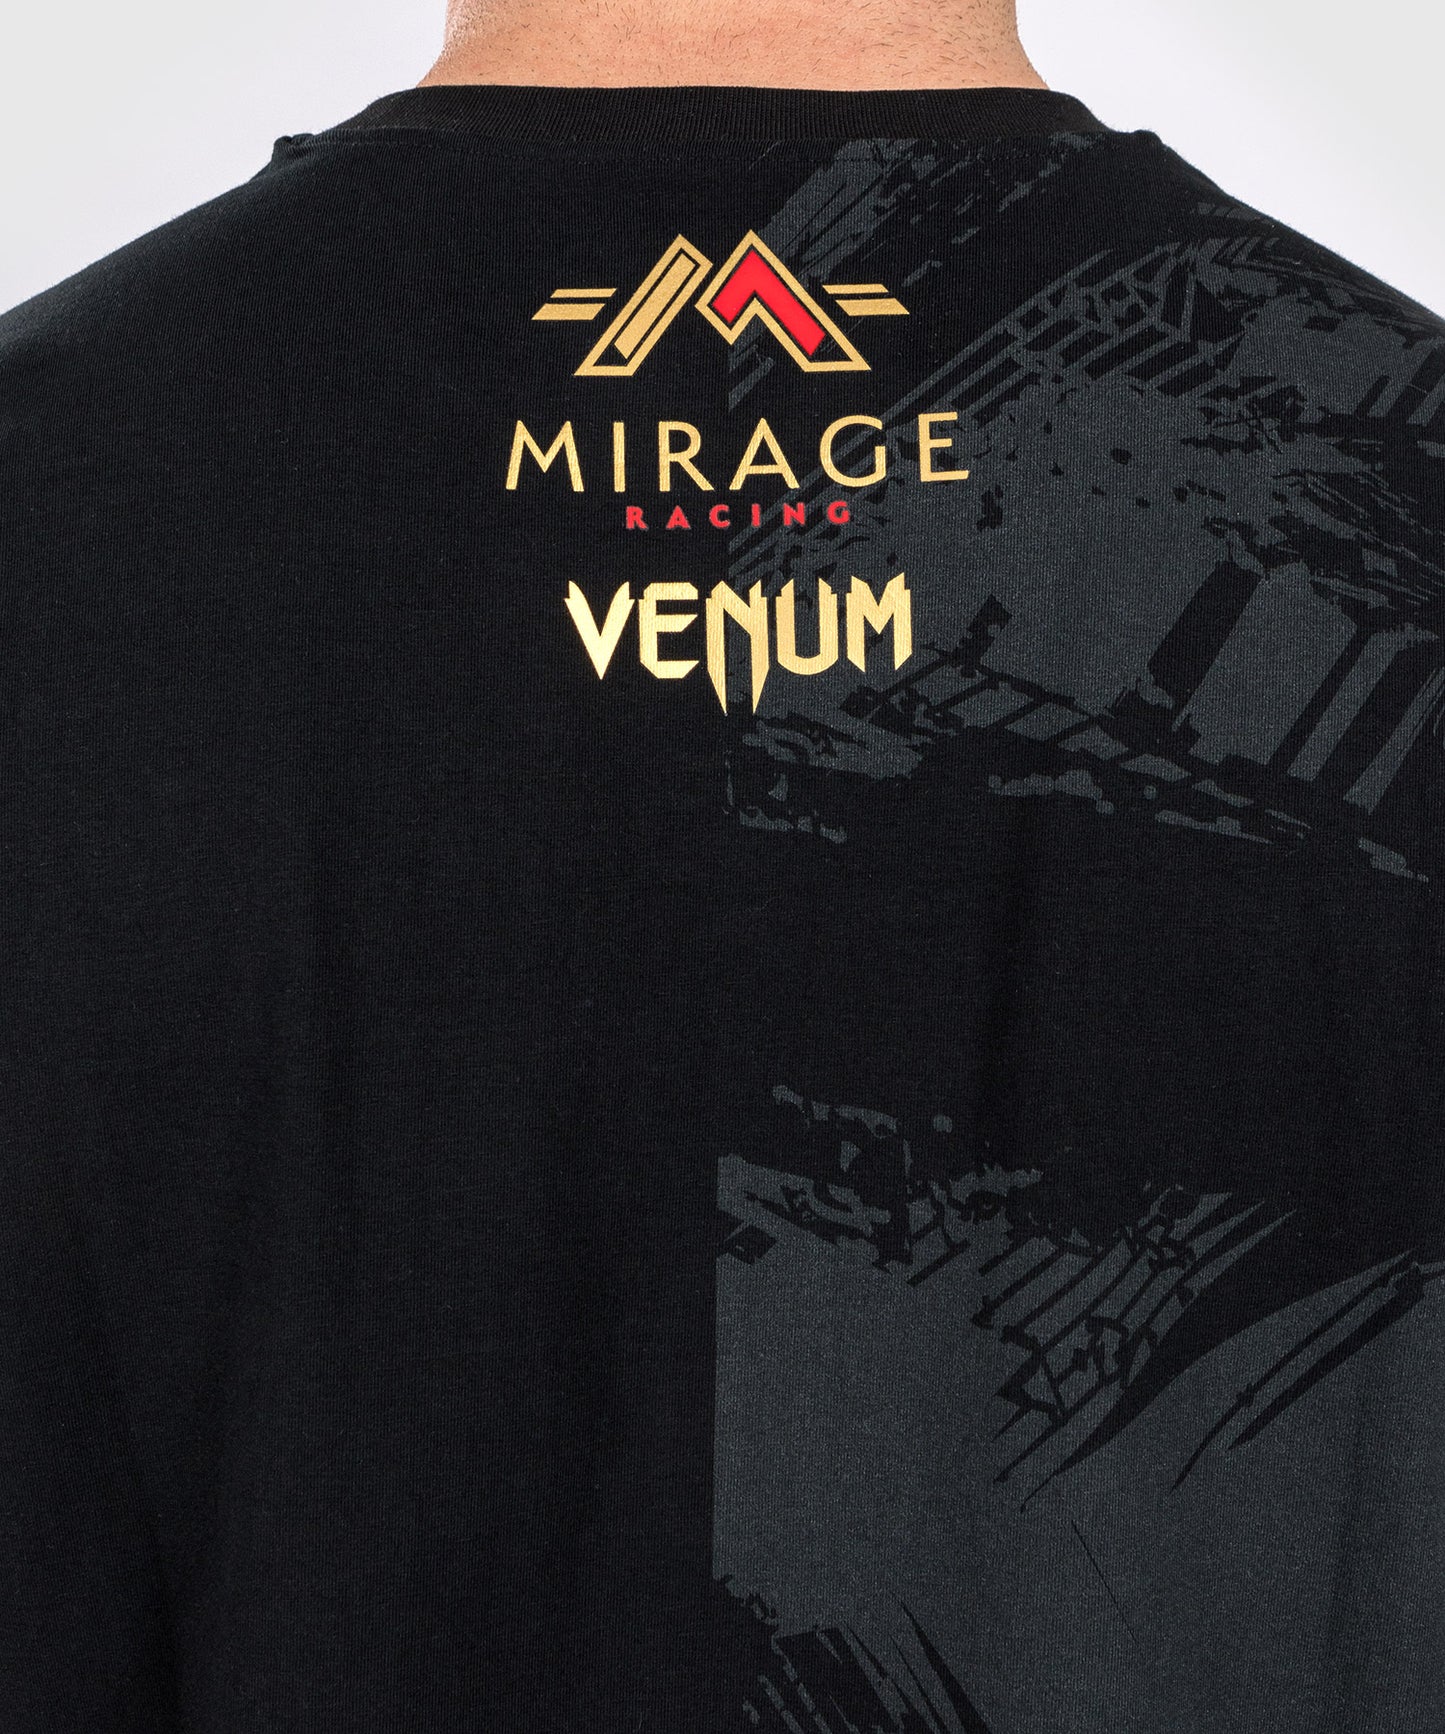 Venum x Mirage Camiseta - Negro/Oro